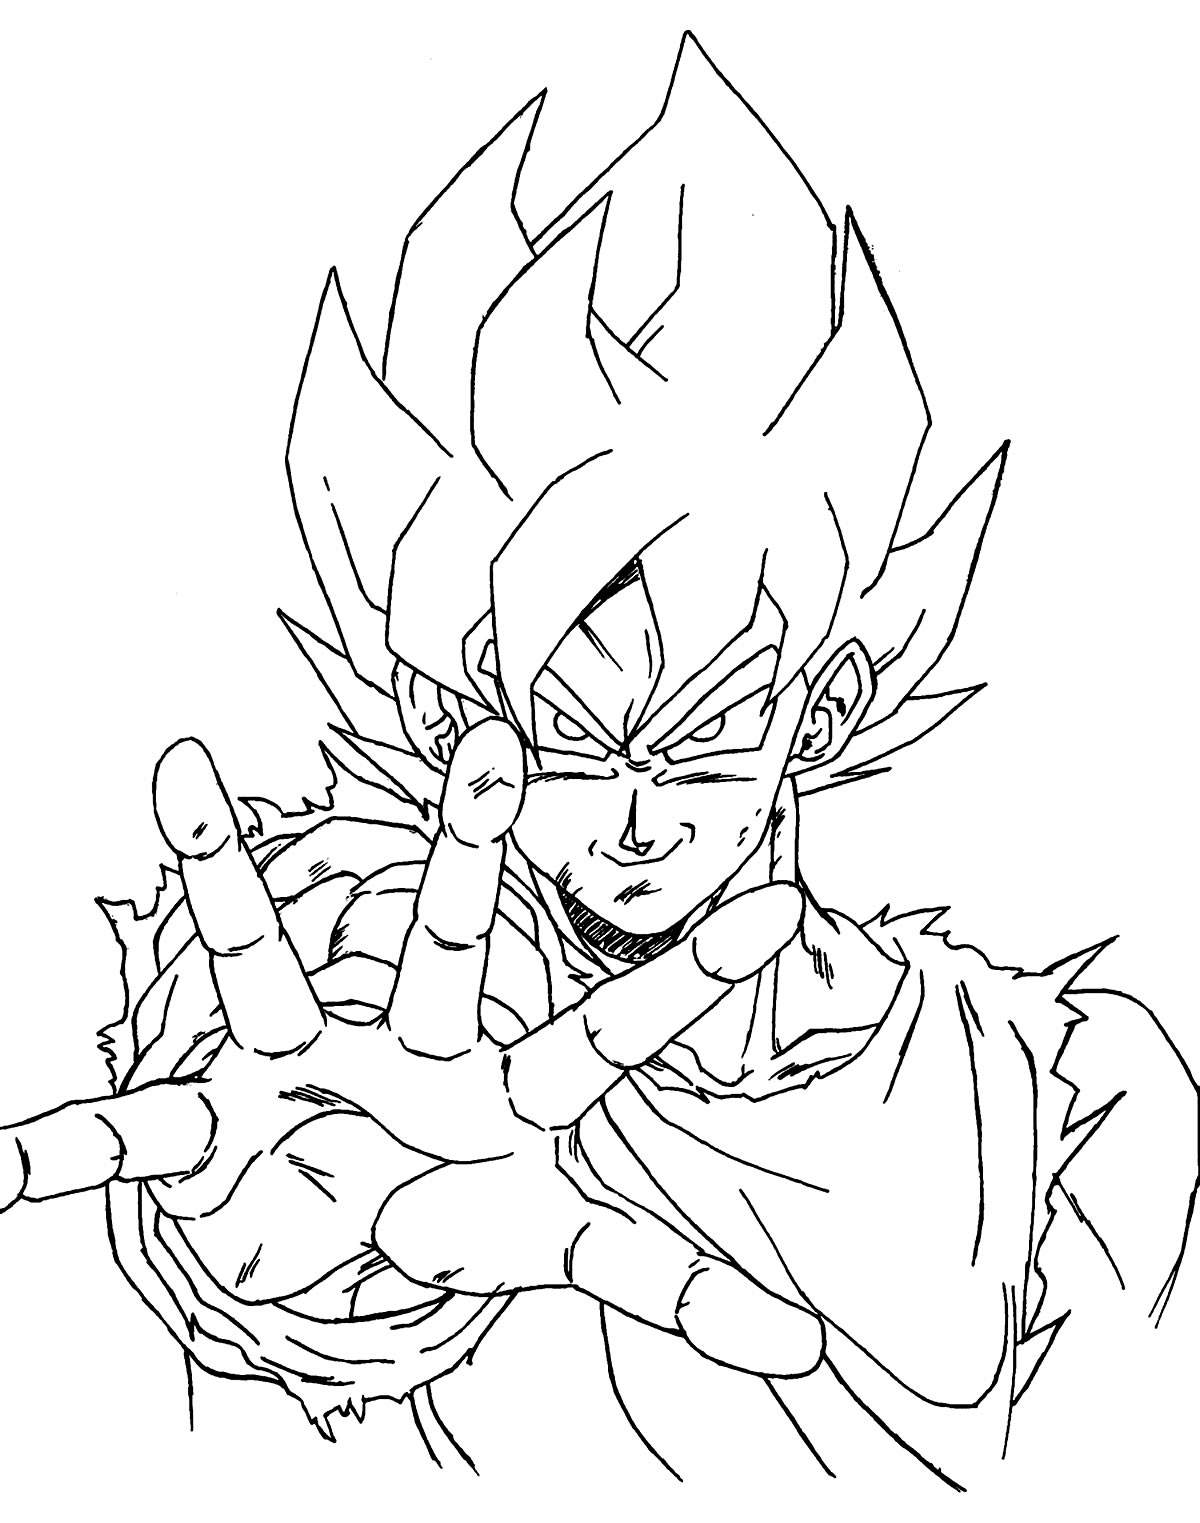 Imagem do Goku para colorir